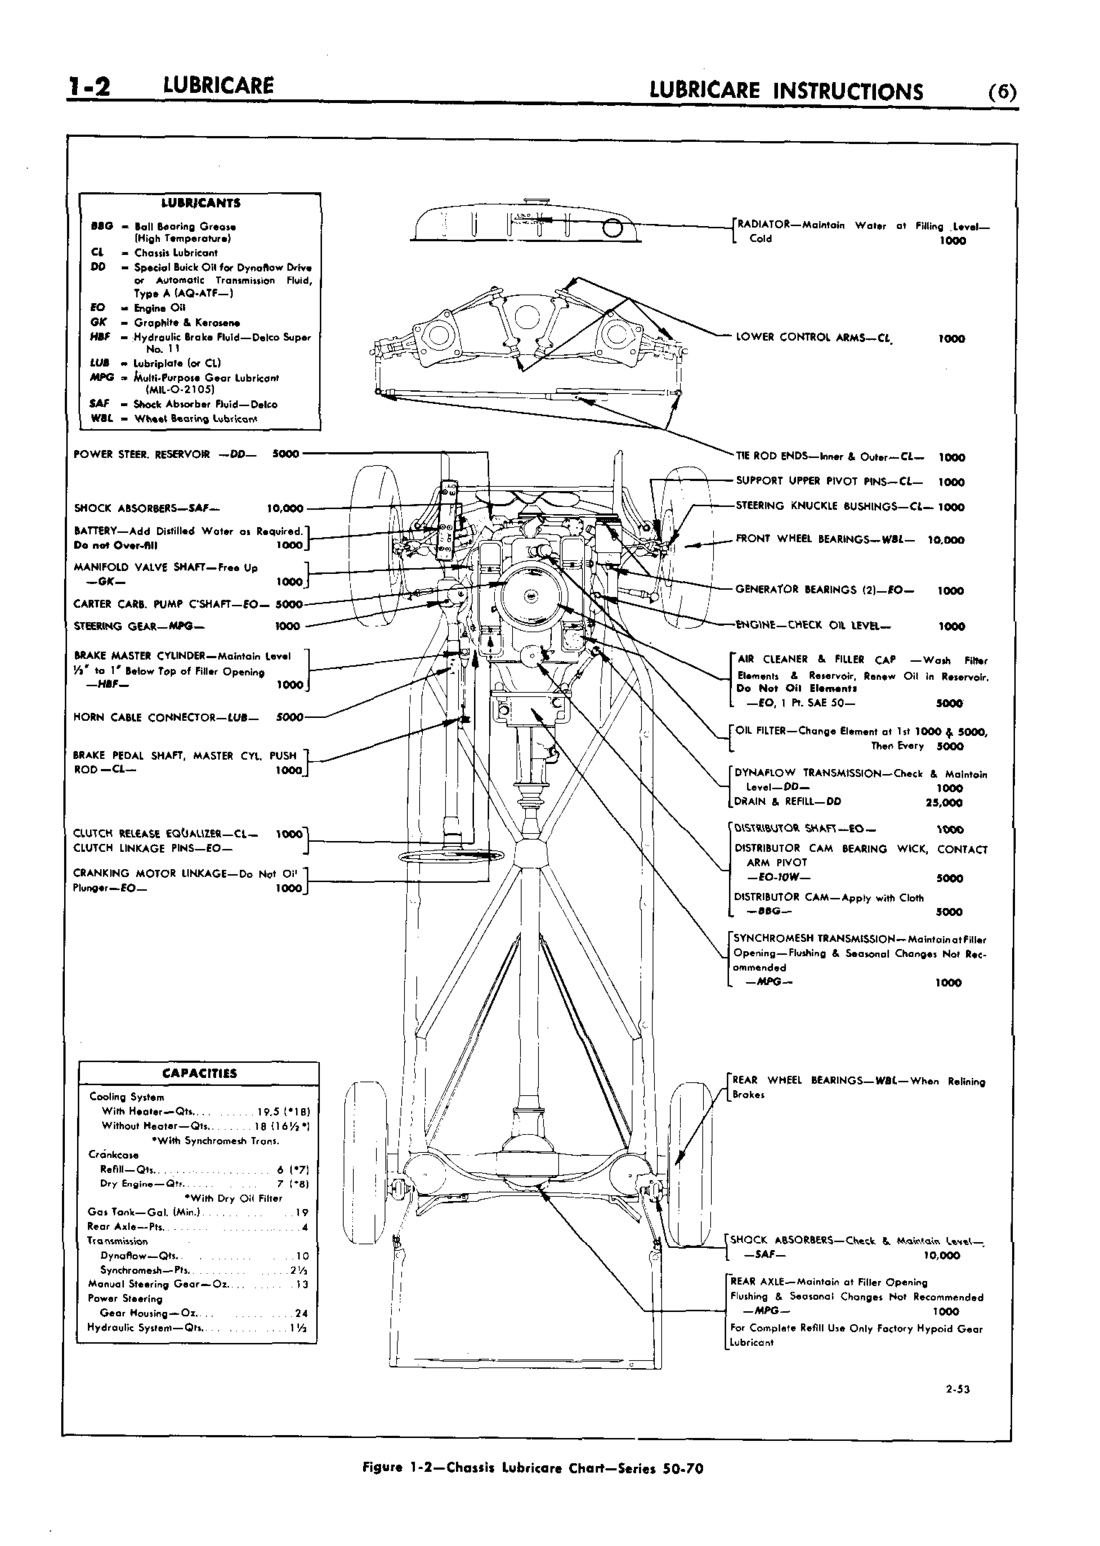 n_02 1953 Buick Shop Manual - Lubricare-002-002.jpg